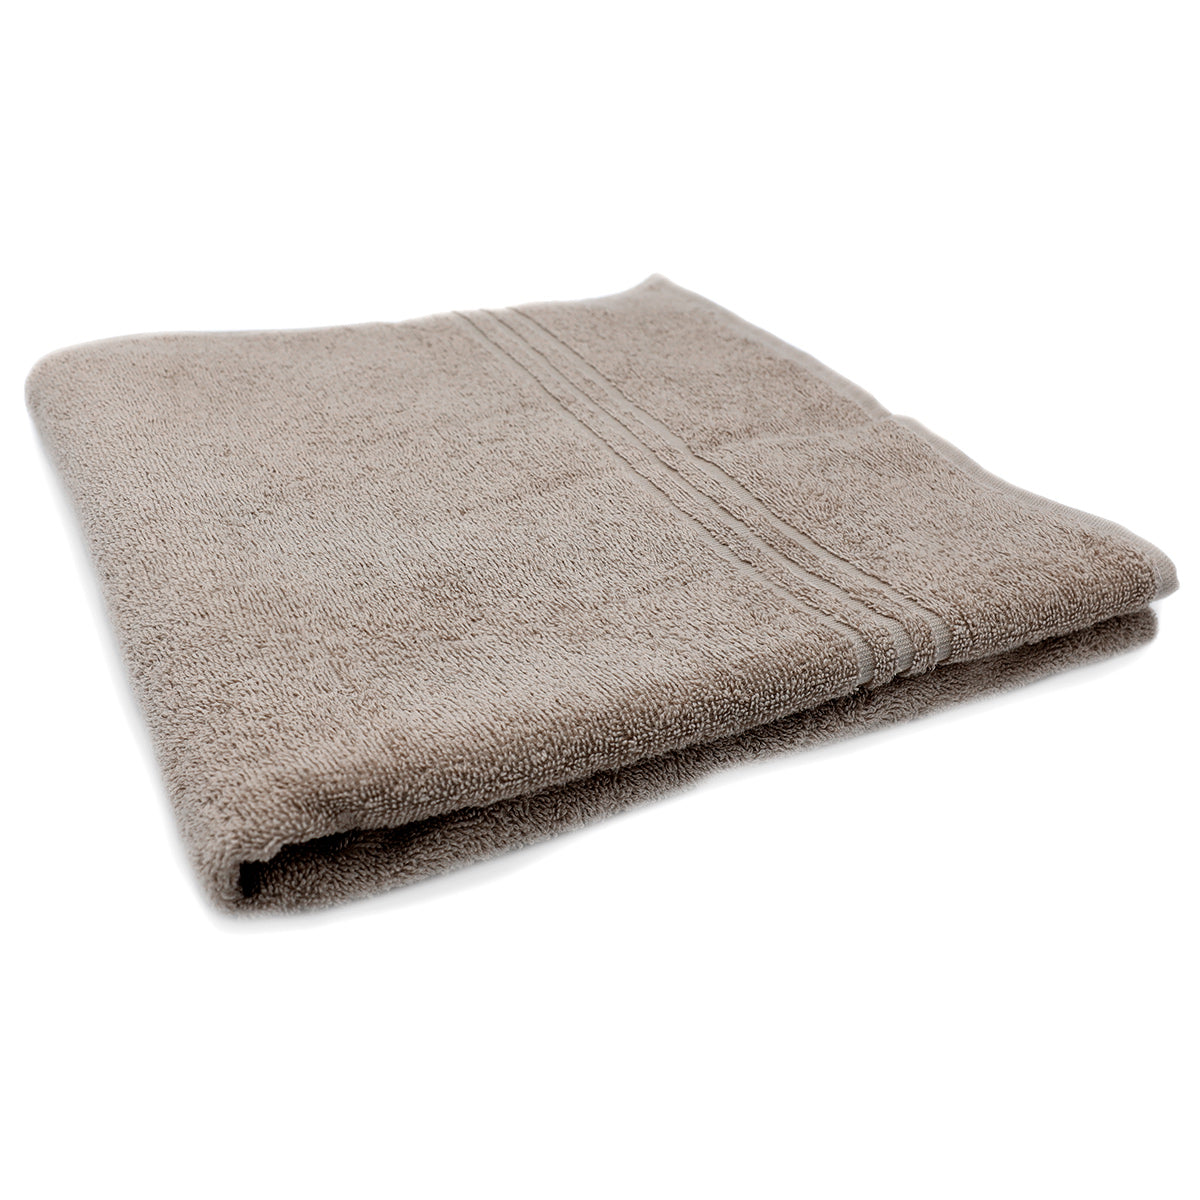 (30 stk.) Grønland badehåndklæde - 70 x 140 cm - sand